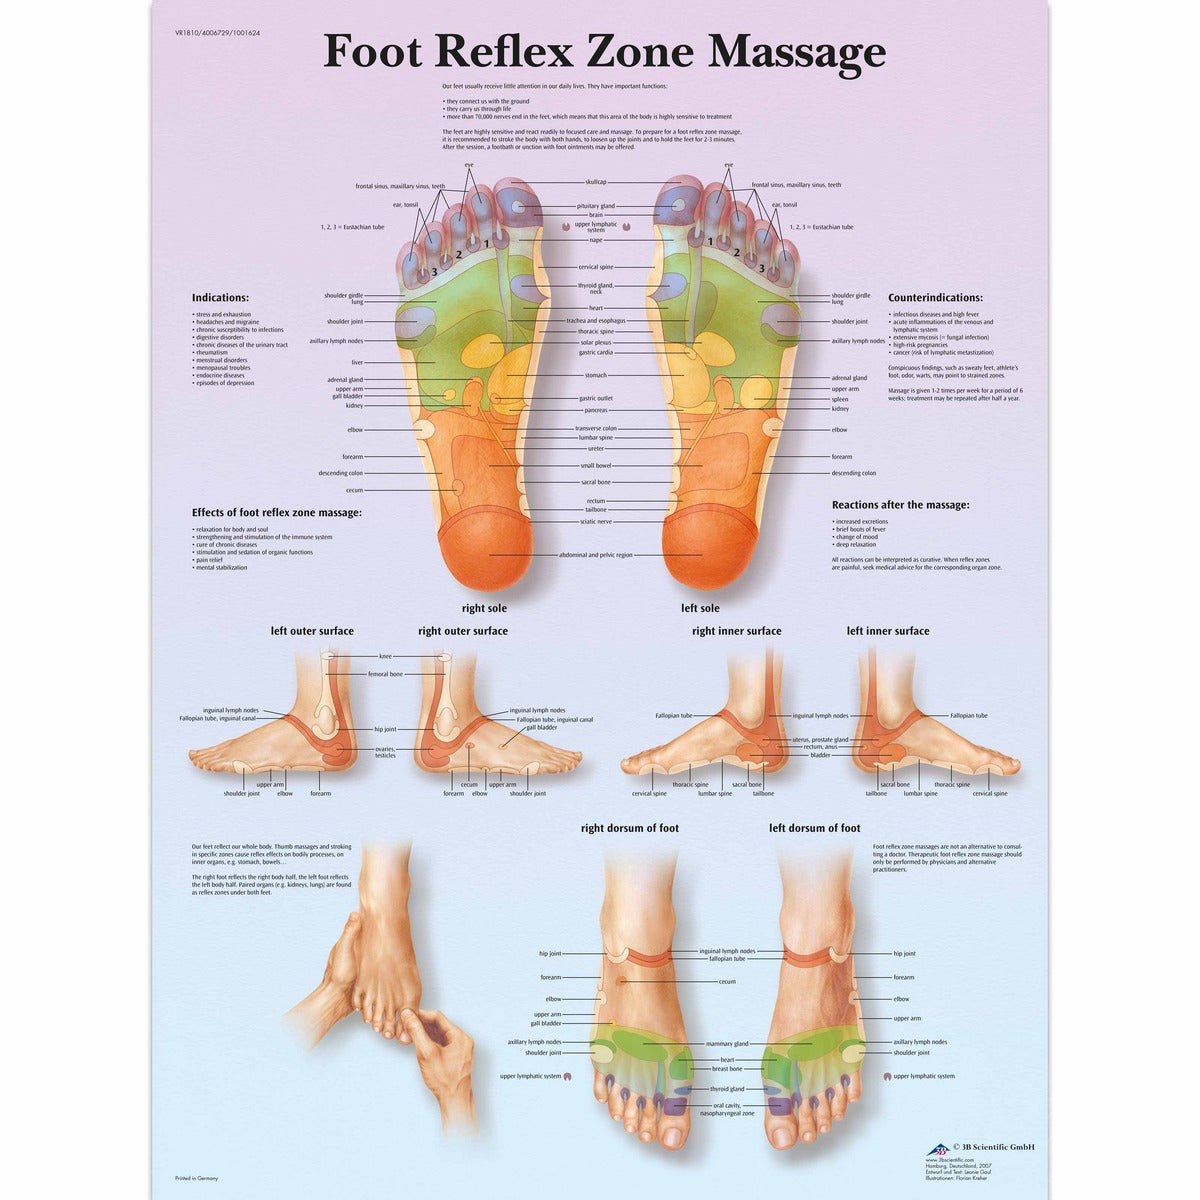 Tableau de massage des zones réflexes des pieds, laminé - par 3B Scientific